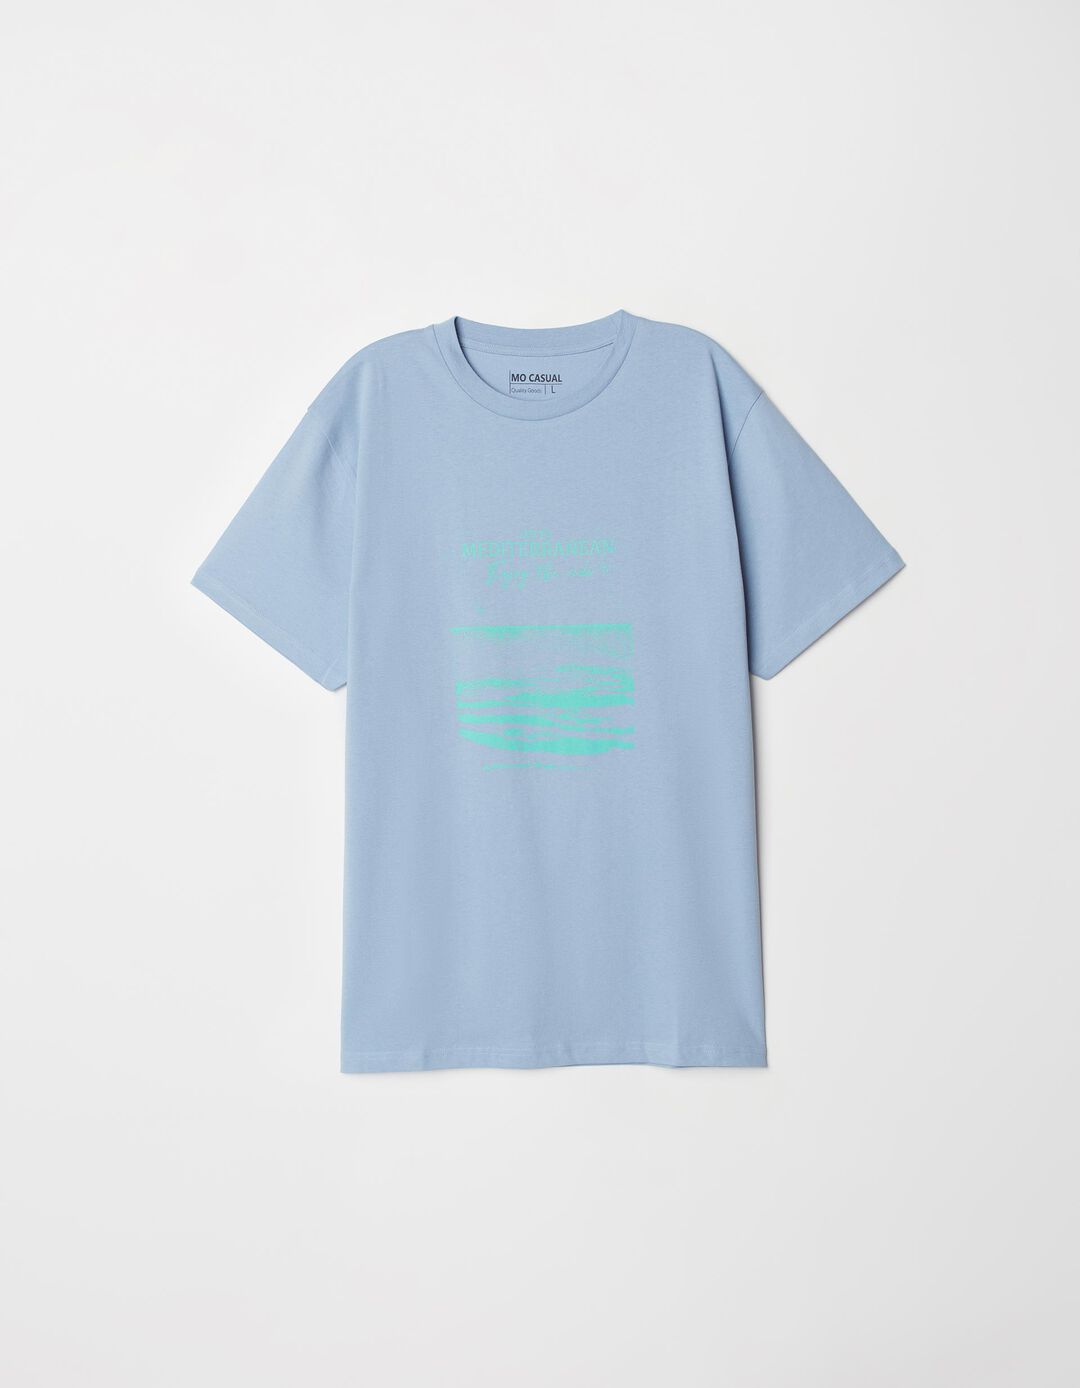 T-shirt Estampado, Homem, Azul Claro